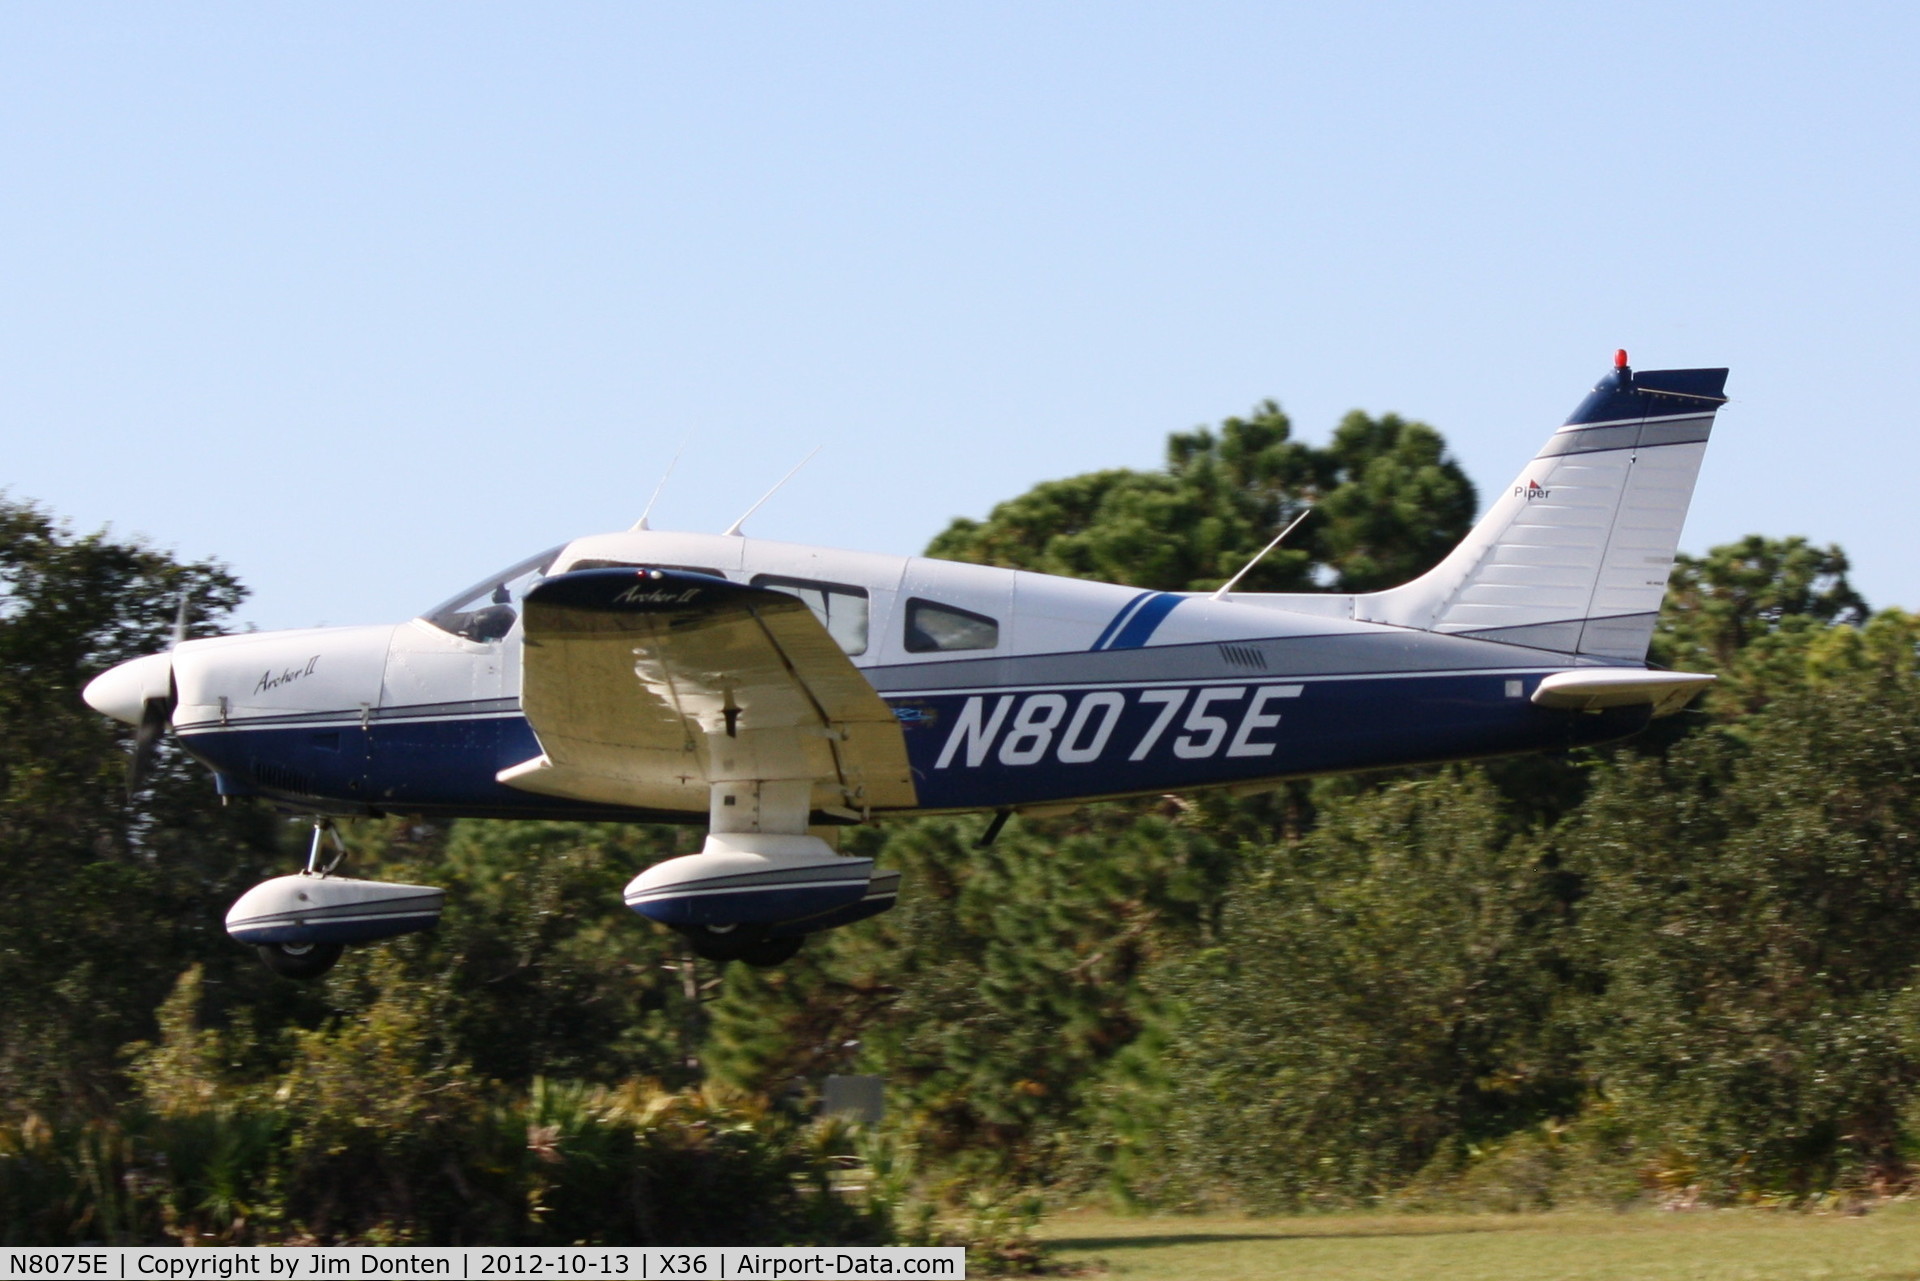 N8075E, 1979 Piper PA-28-181 C/N 28-8090065, Piper Cherokee (N8075E) departs Buchan Airport